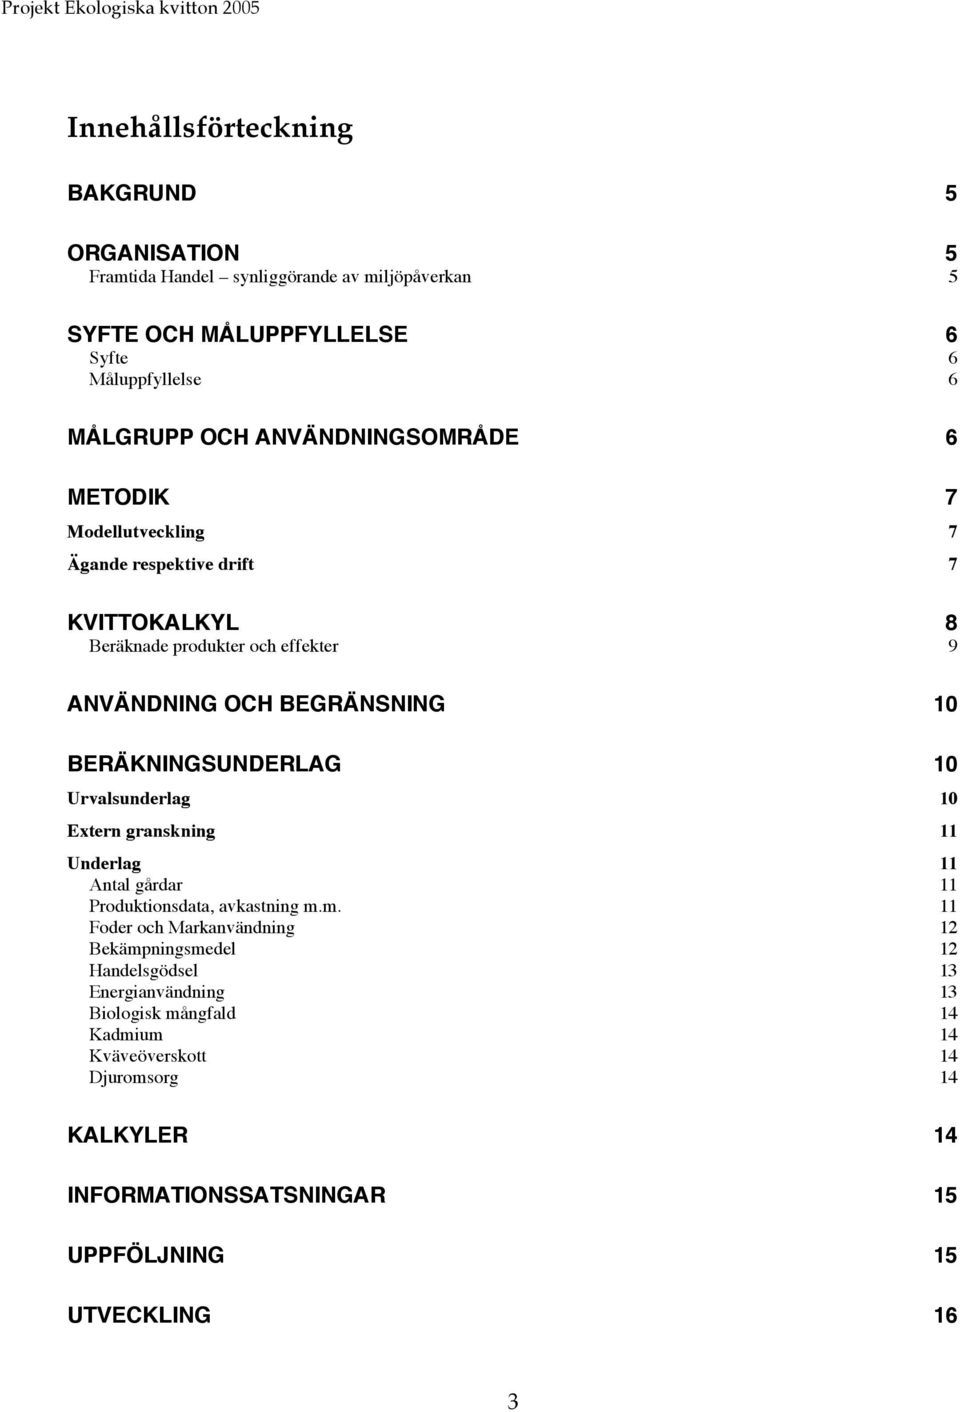 BERÄKNINGSUNDERLAG 10 Urvalsunderlag 10 Extern granskning 11 Underlag 11 Antal gårdar 11 Produktionsdata, avkastning m.